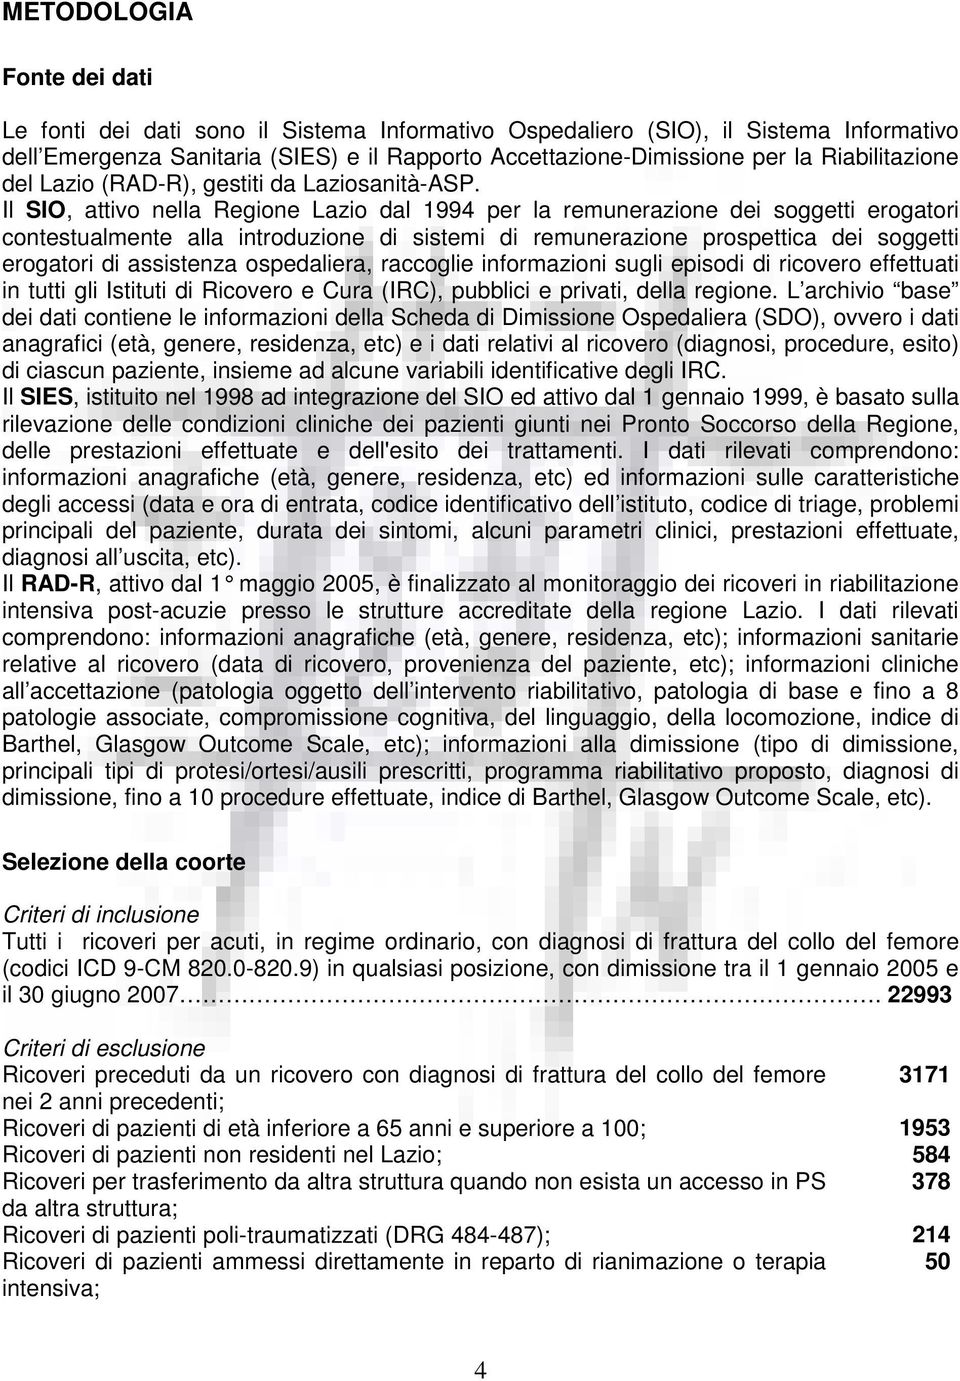 Il SIO, attivo nella Regione Lazio dal 1994 per la remunerazione dei soggetti erogatori contestualmente alla introduzione di sistemi di remunerazione prospettica dei soggetti erogatori di assistenza